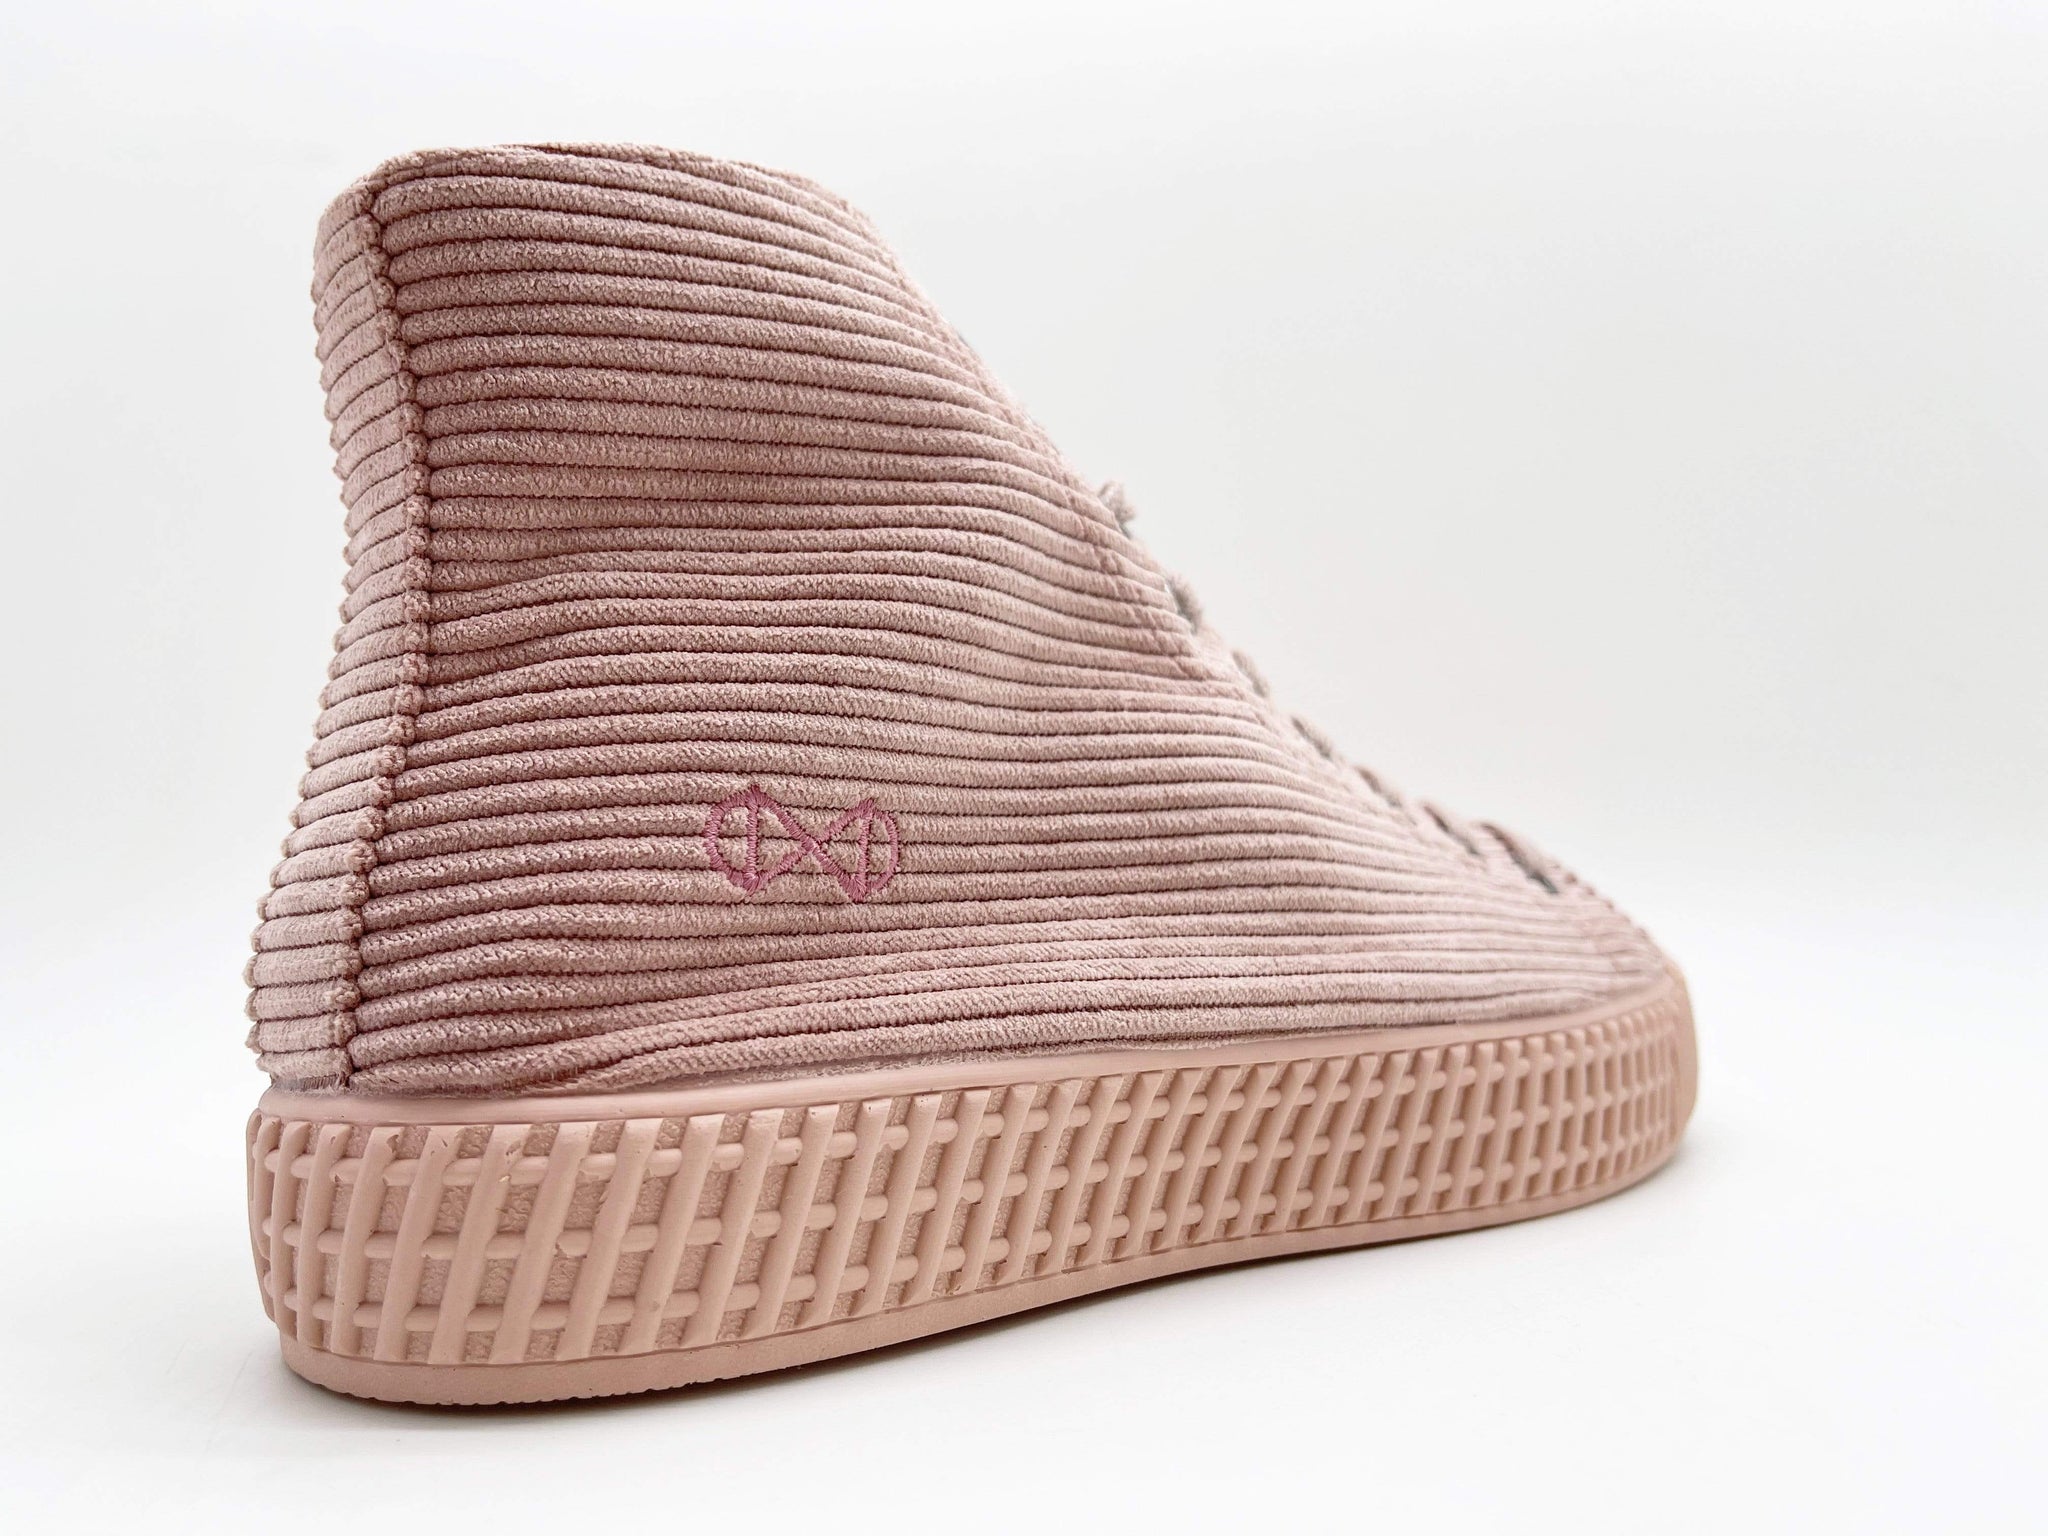 K&T Handels- und Unternehmensberatung GmbH zapatos Vegan Sneakers en Cord, Cork y Sugar caña moda sostenible moda ética